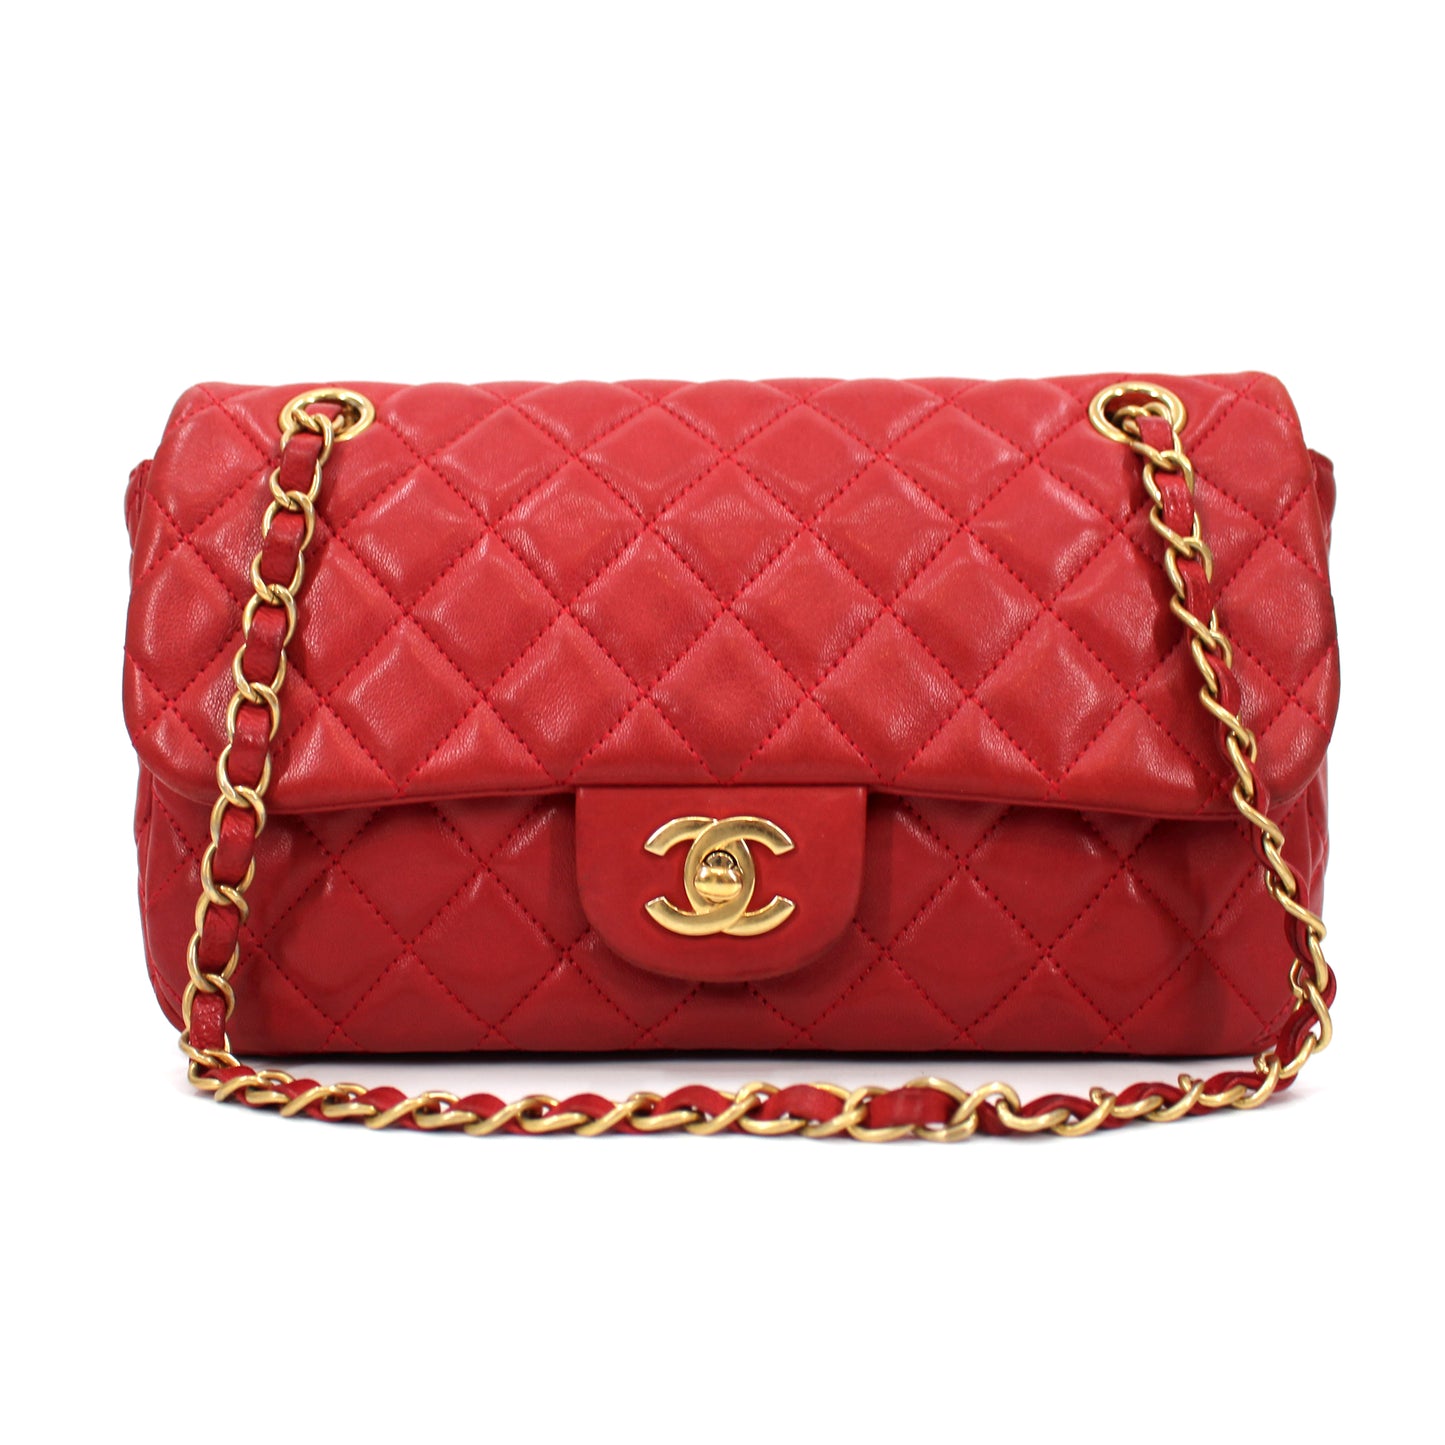 Chanel Lambskin Single Flap Bag